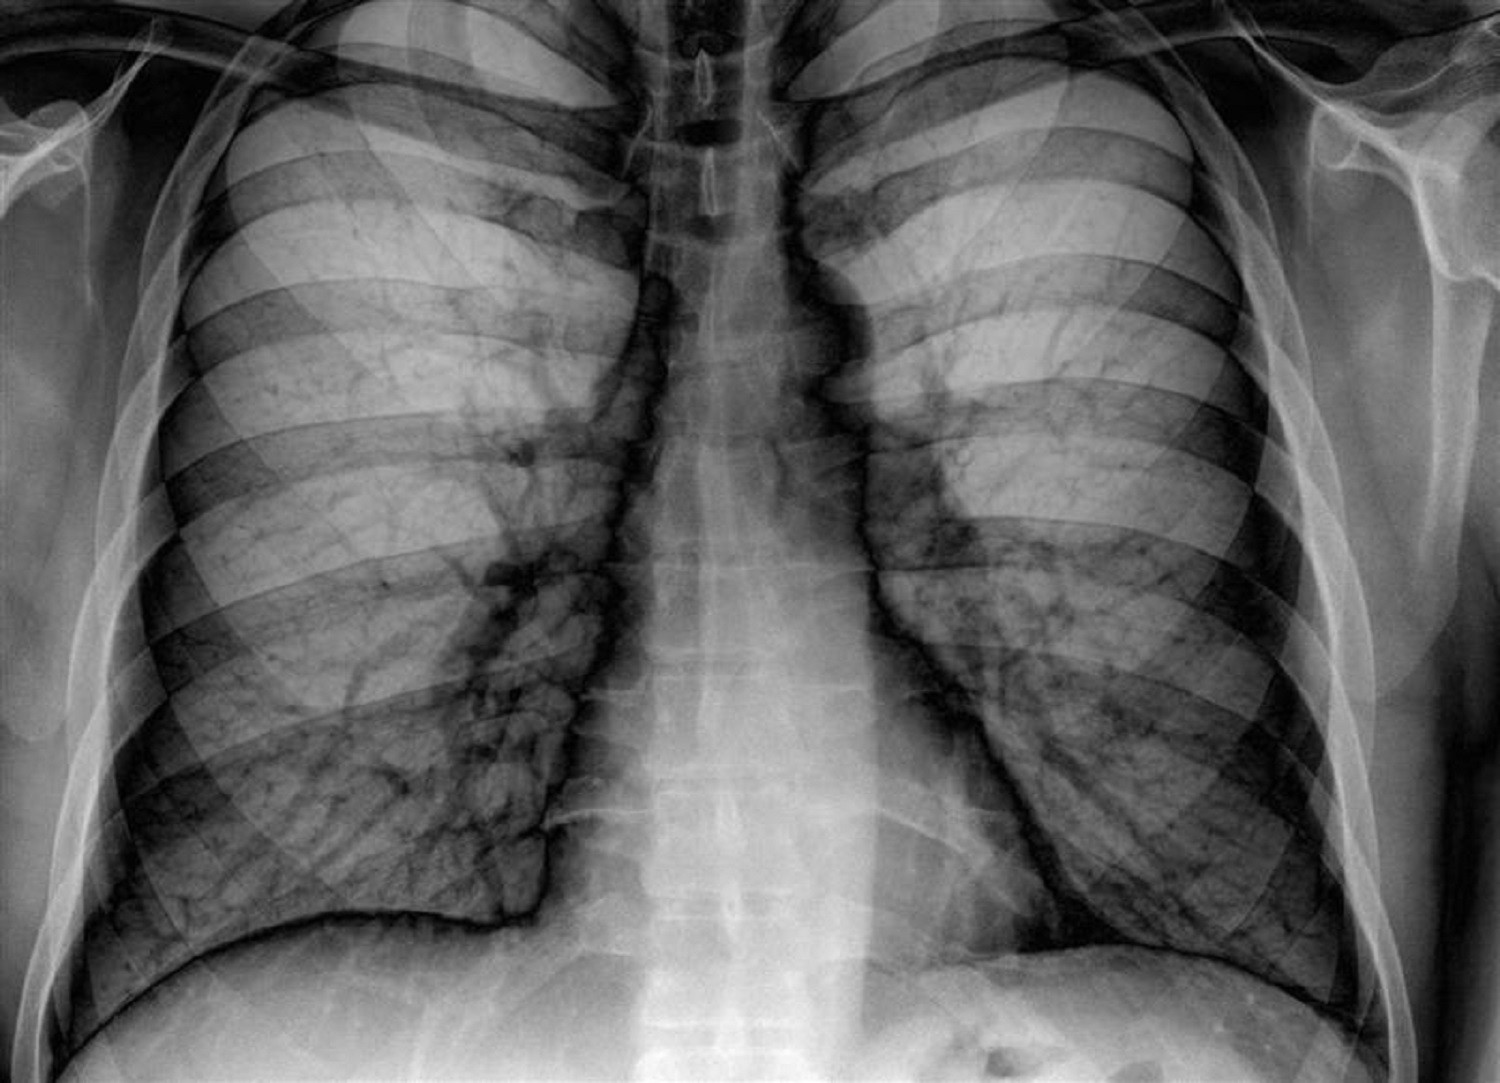 Σύστημα ερμηνεύει ακτινογραφίες πνευμόνων το ίδιο καλά με έμπειρους πνευμονολόγους